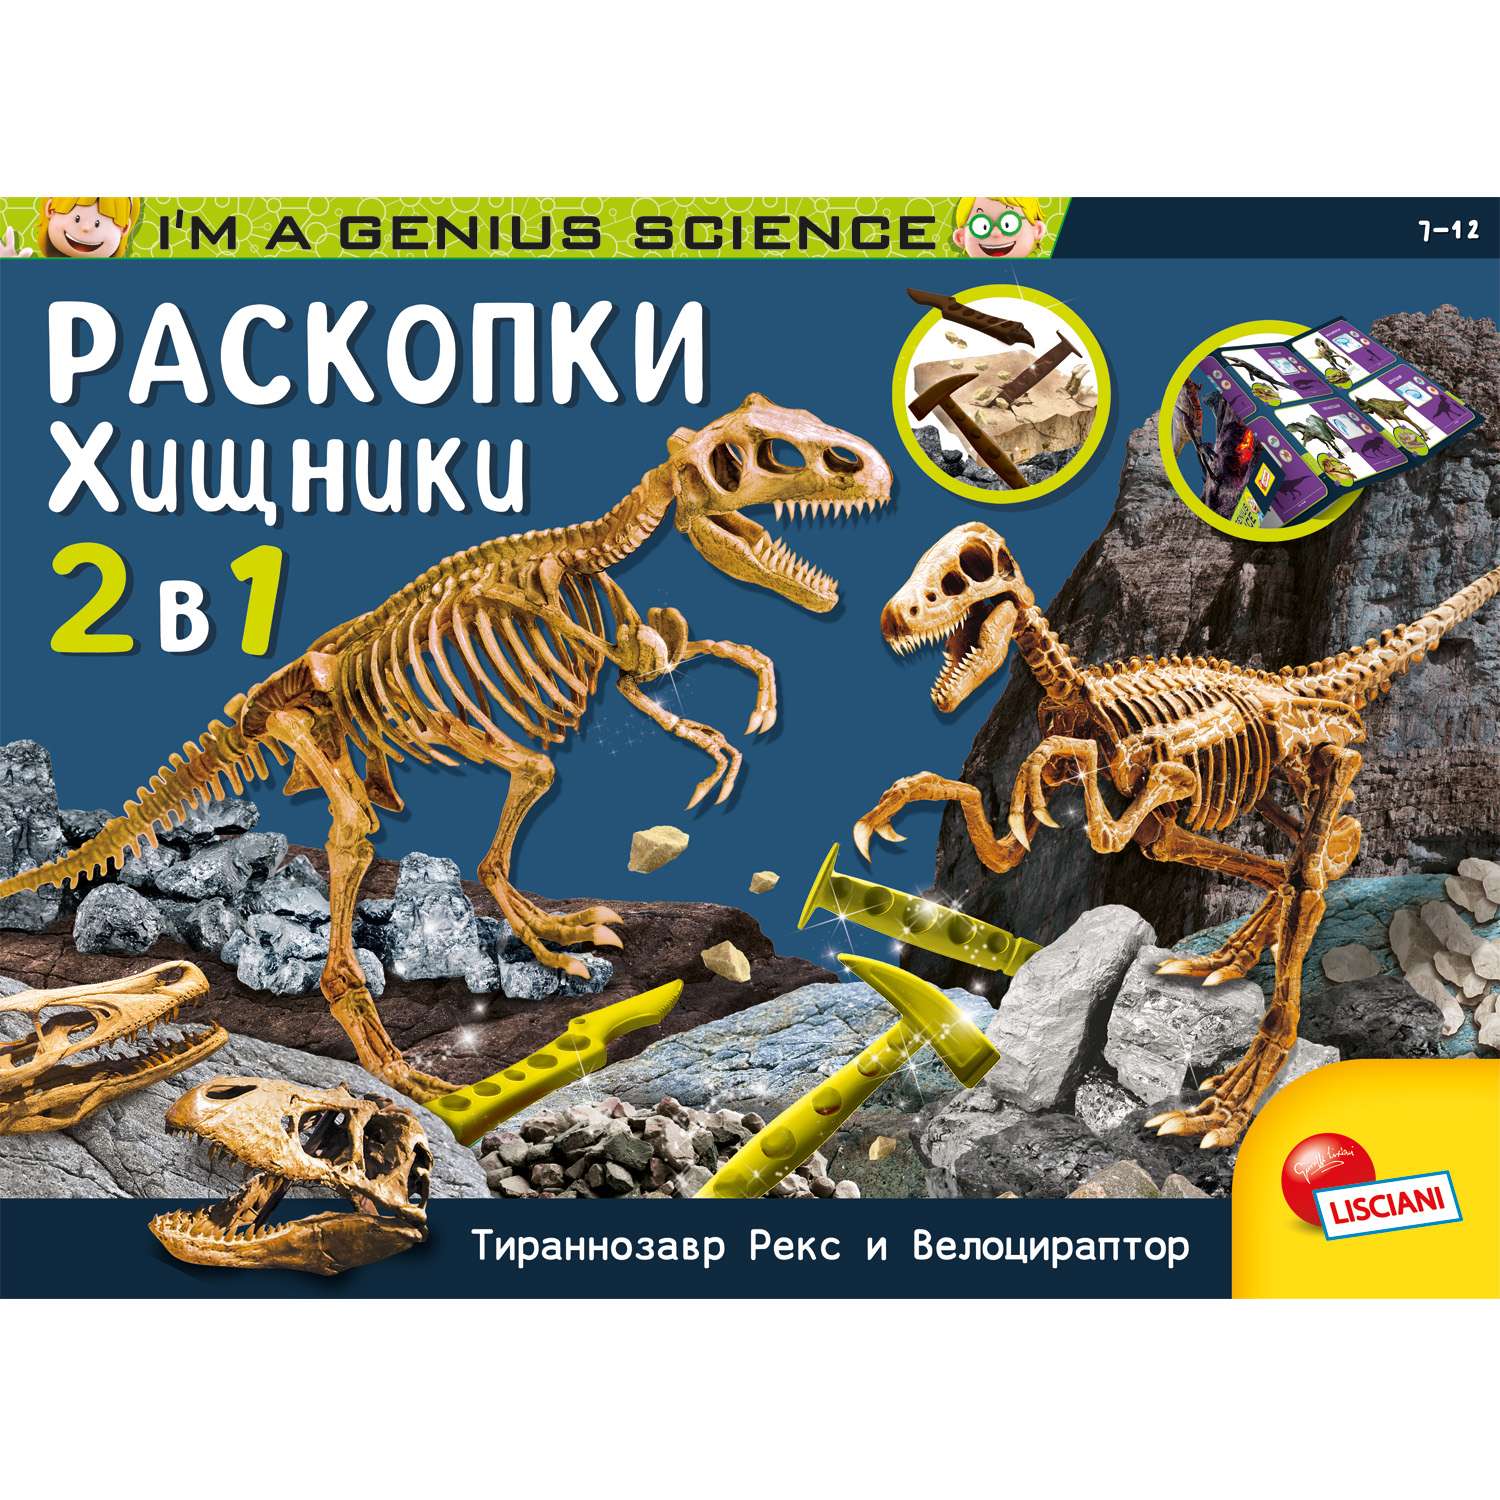 Подарочный набор археолога Lisciani Тираннозавр и Велоцираптор - фото 10